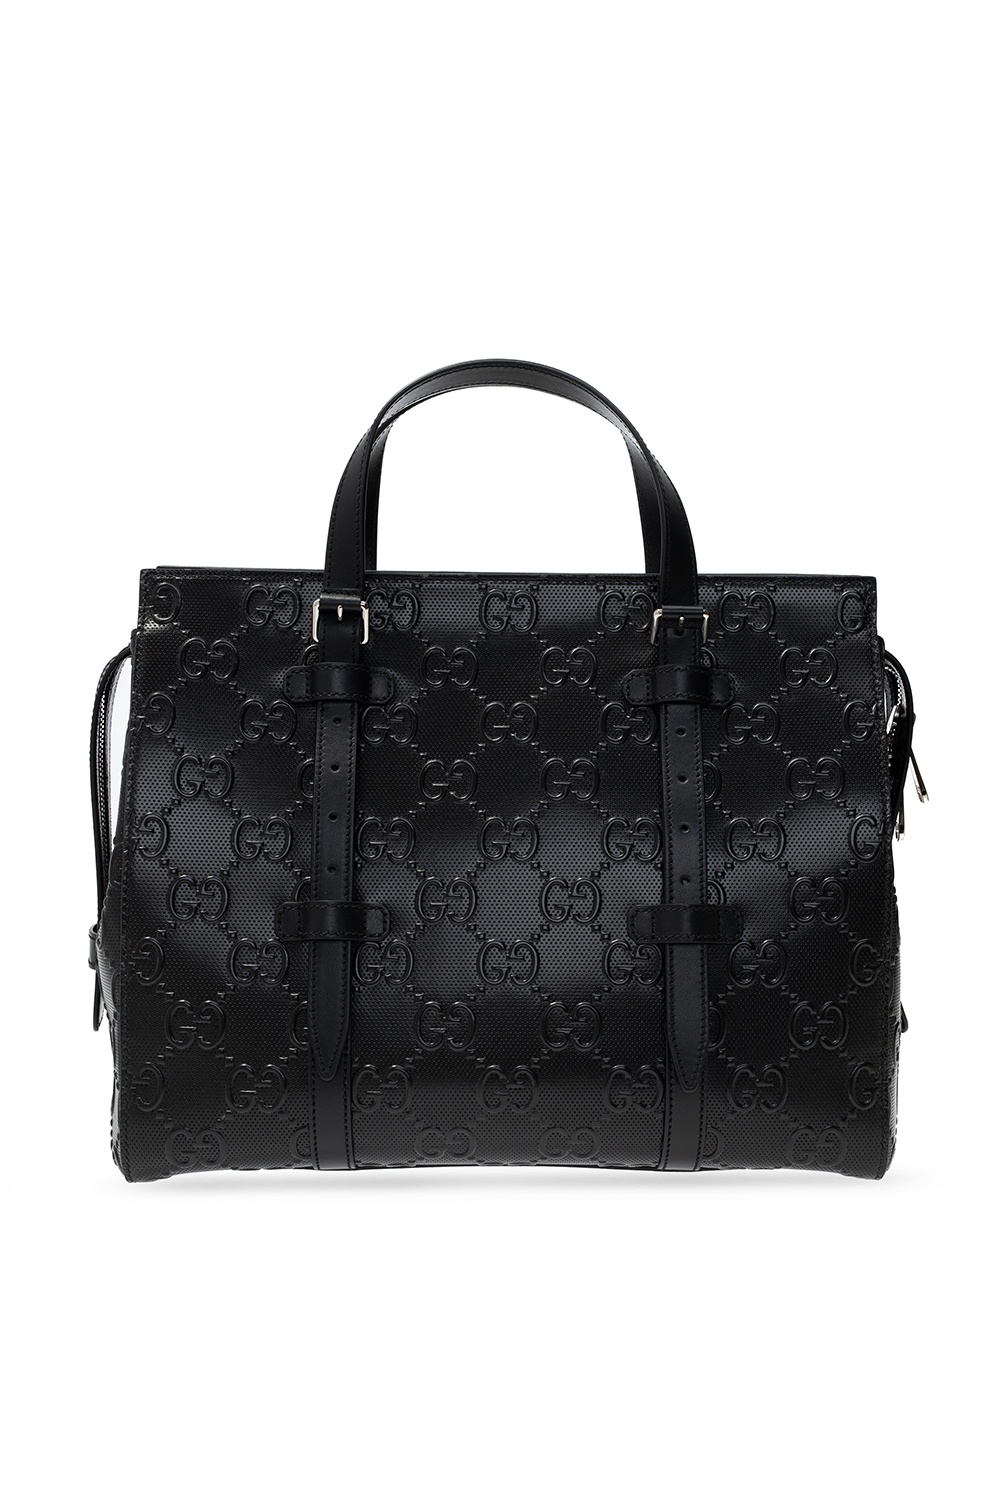 Gucci Logo-Double duffel bag